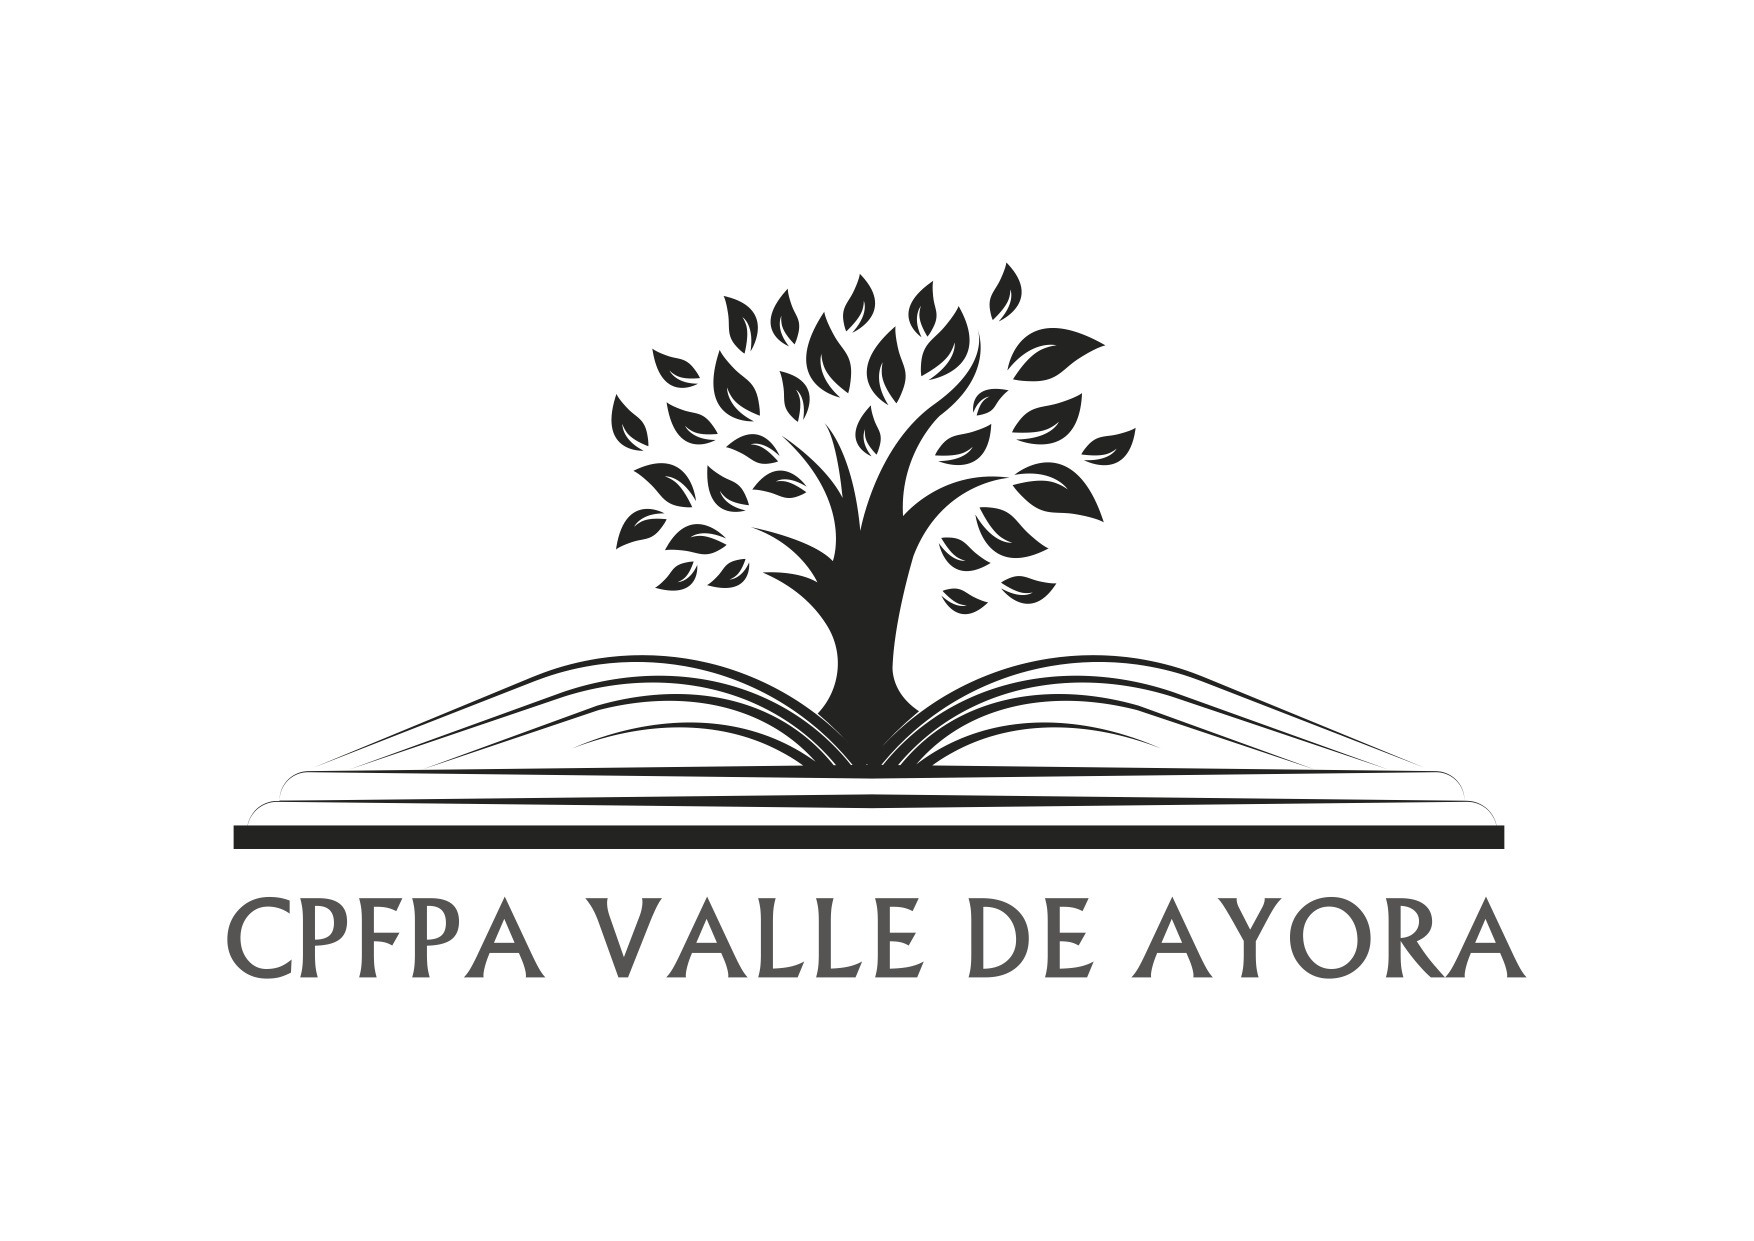 CPFPA VALLE DE AYORA